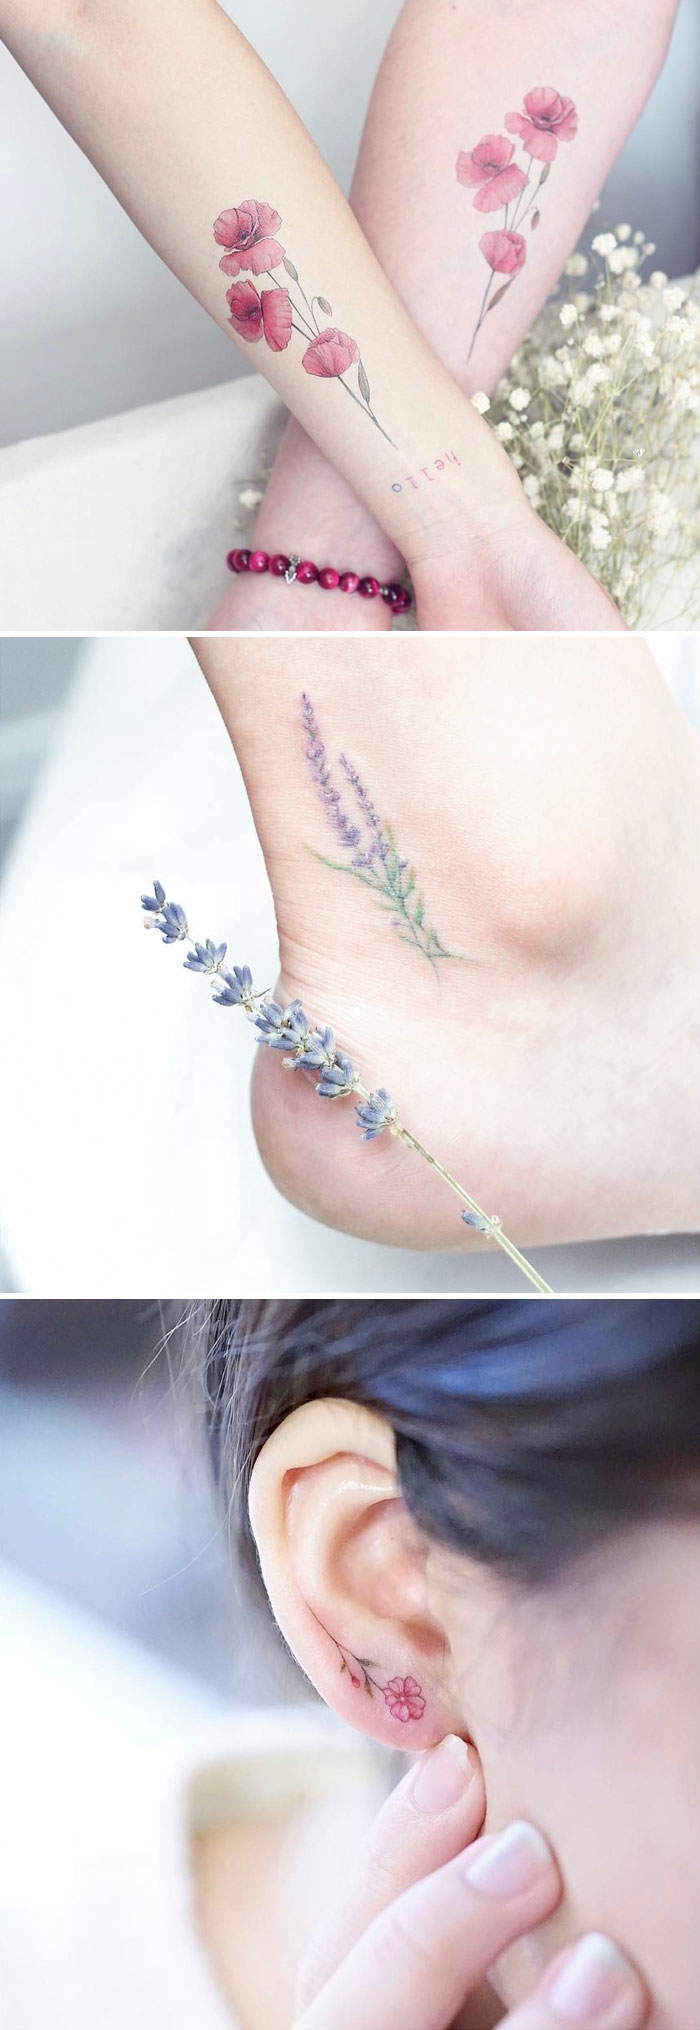 Photo de tatouage femme poignet idées tatoo superbe fleurs colorés